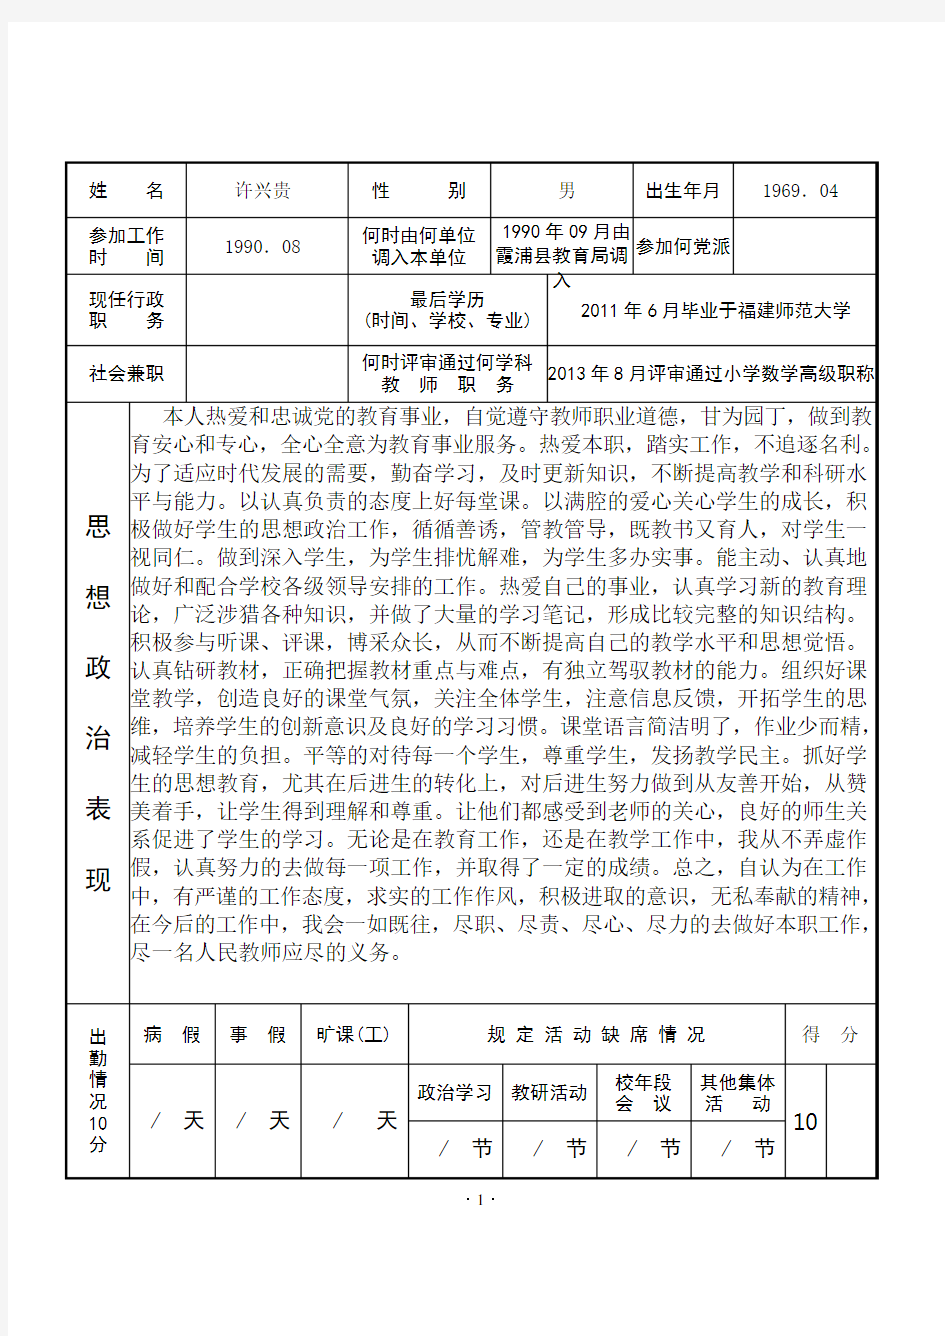 福建省中小学教师职务考评登记表